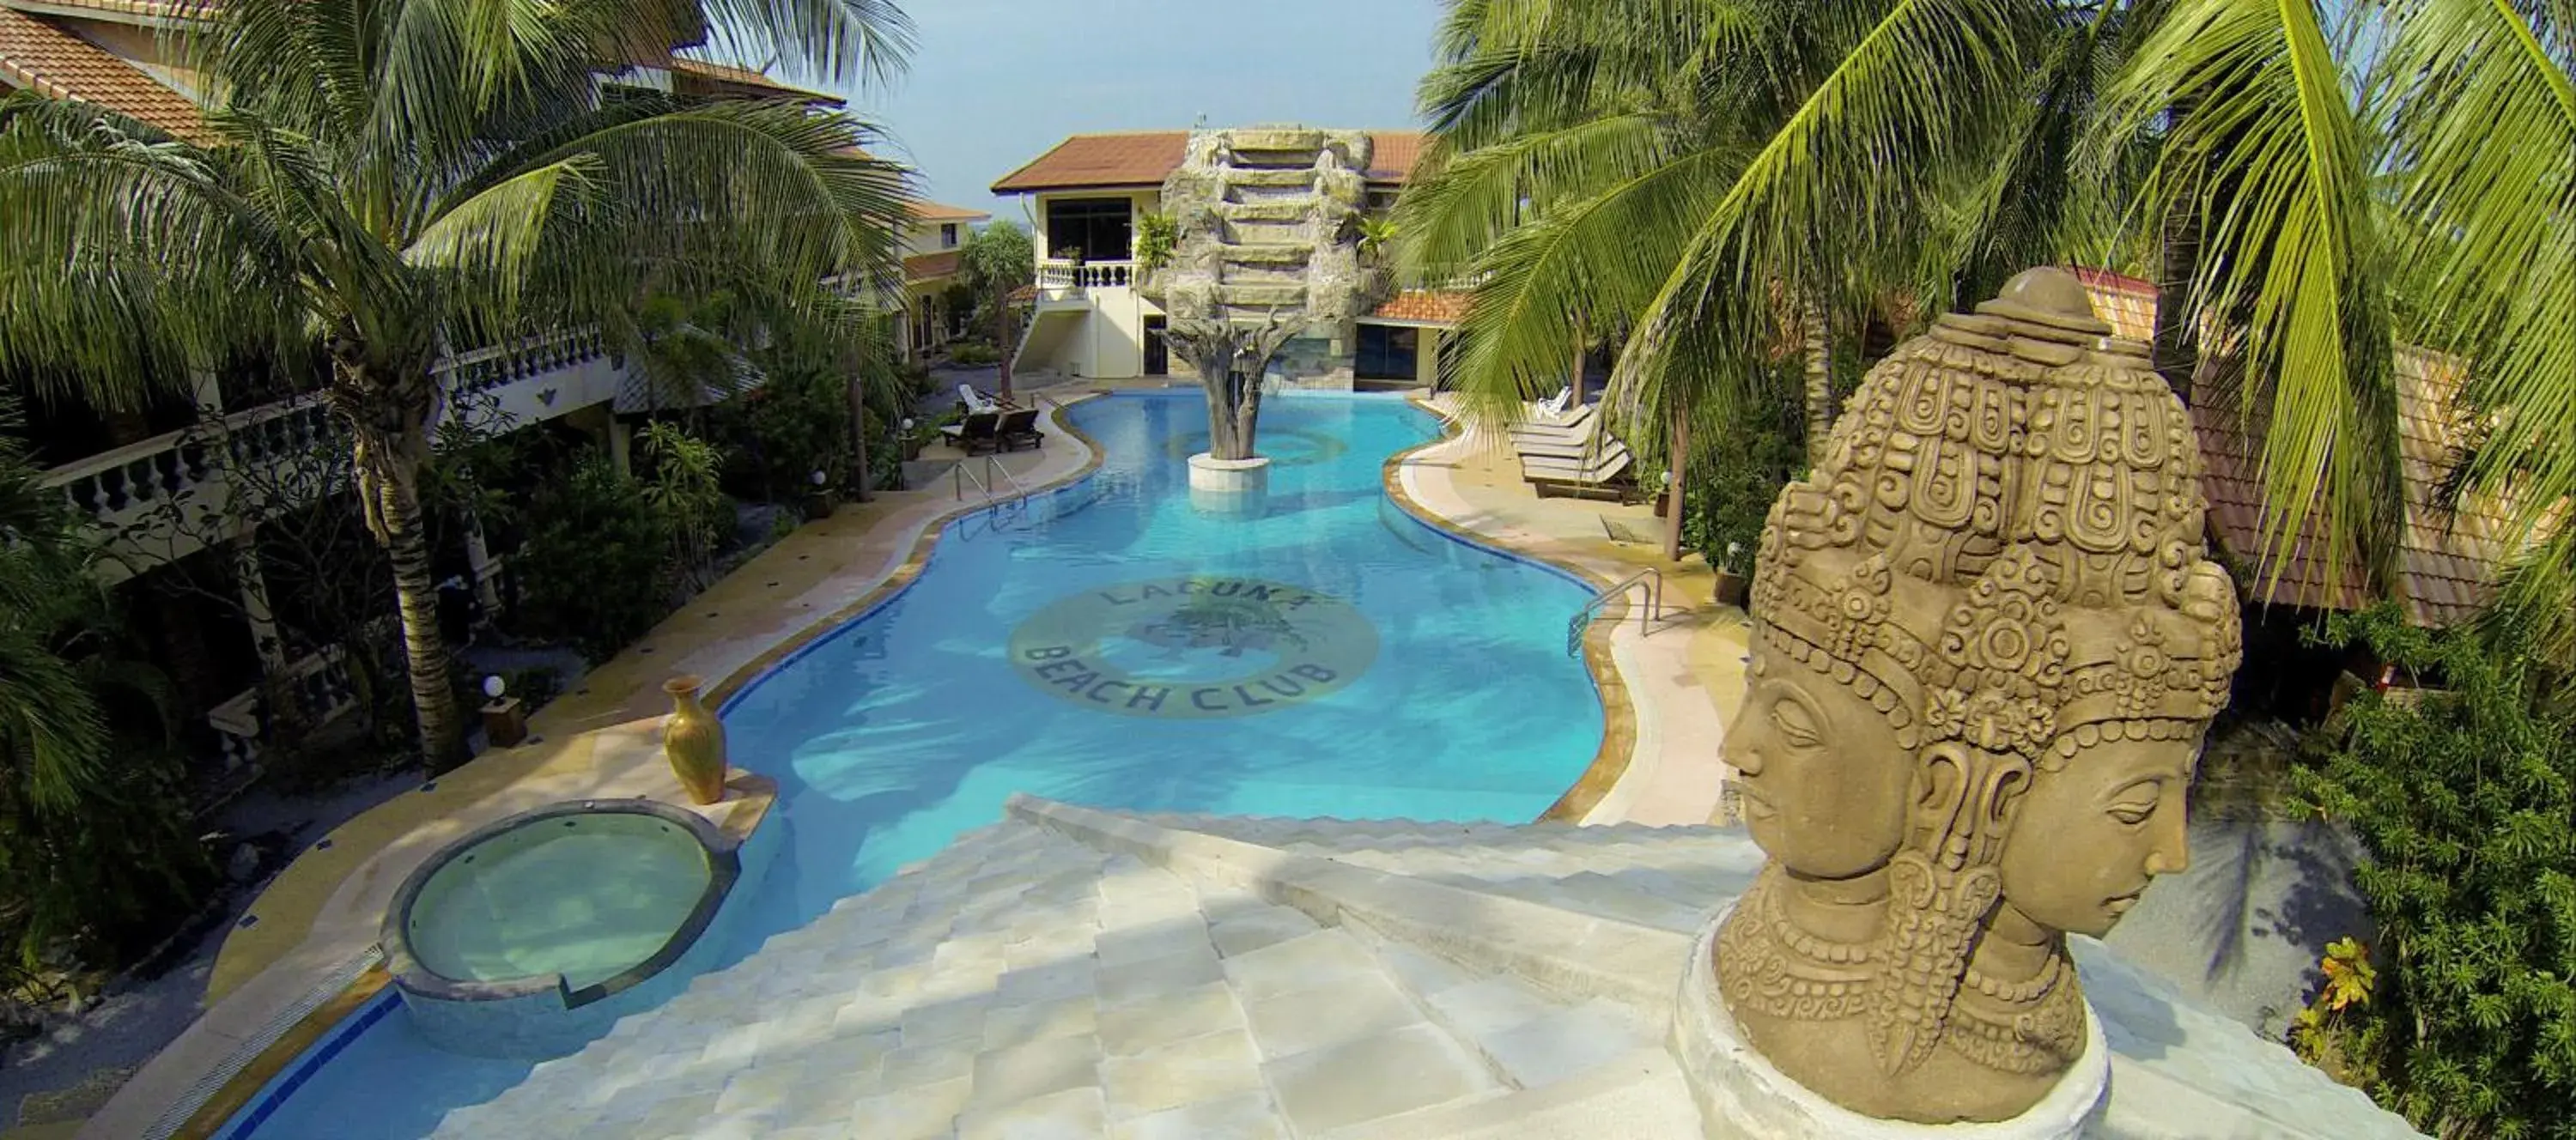 Swimming pool, Pool View in Laguna Beach Club Resort